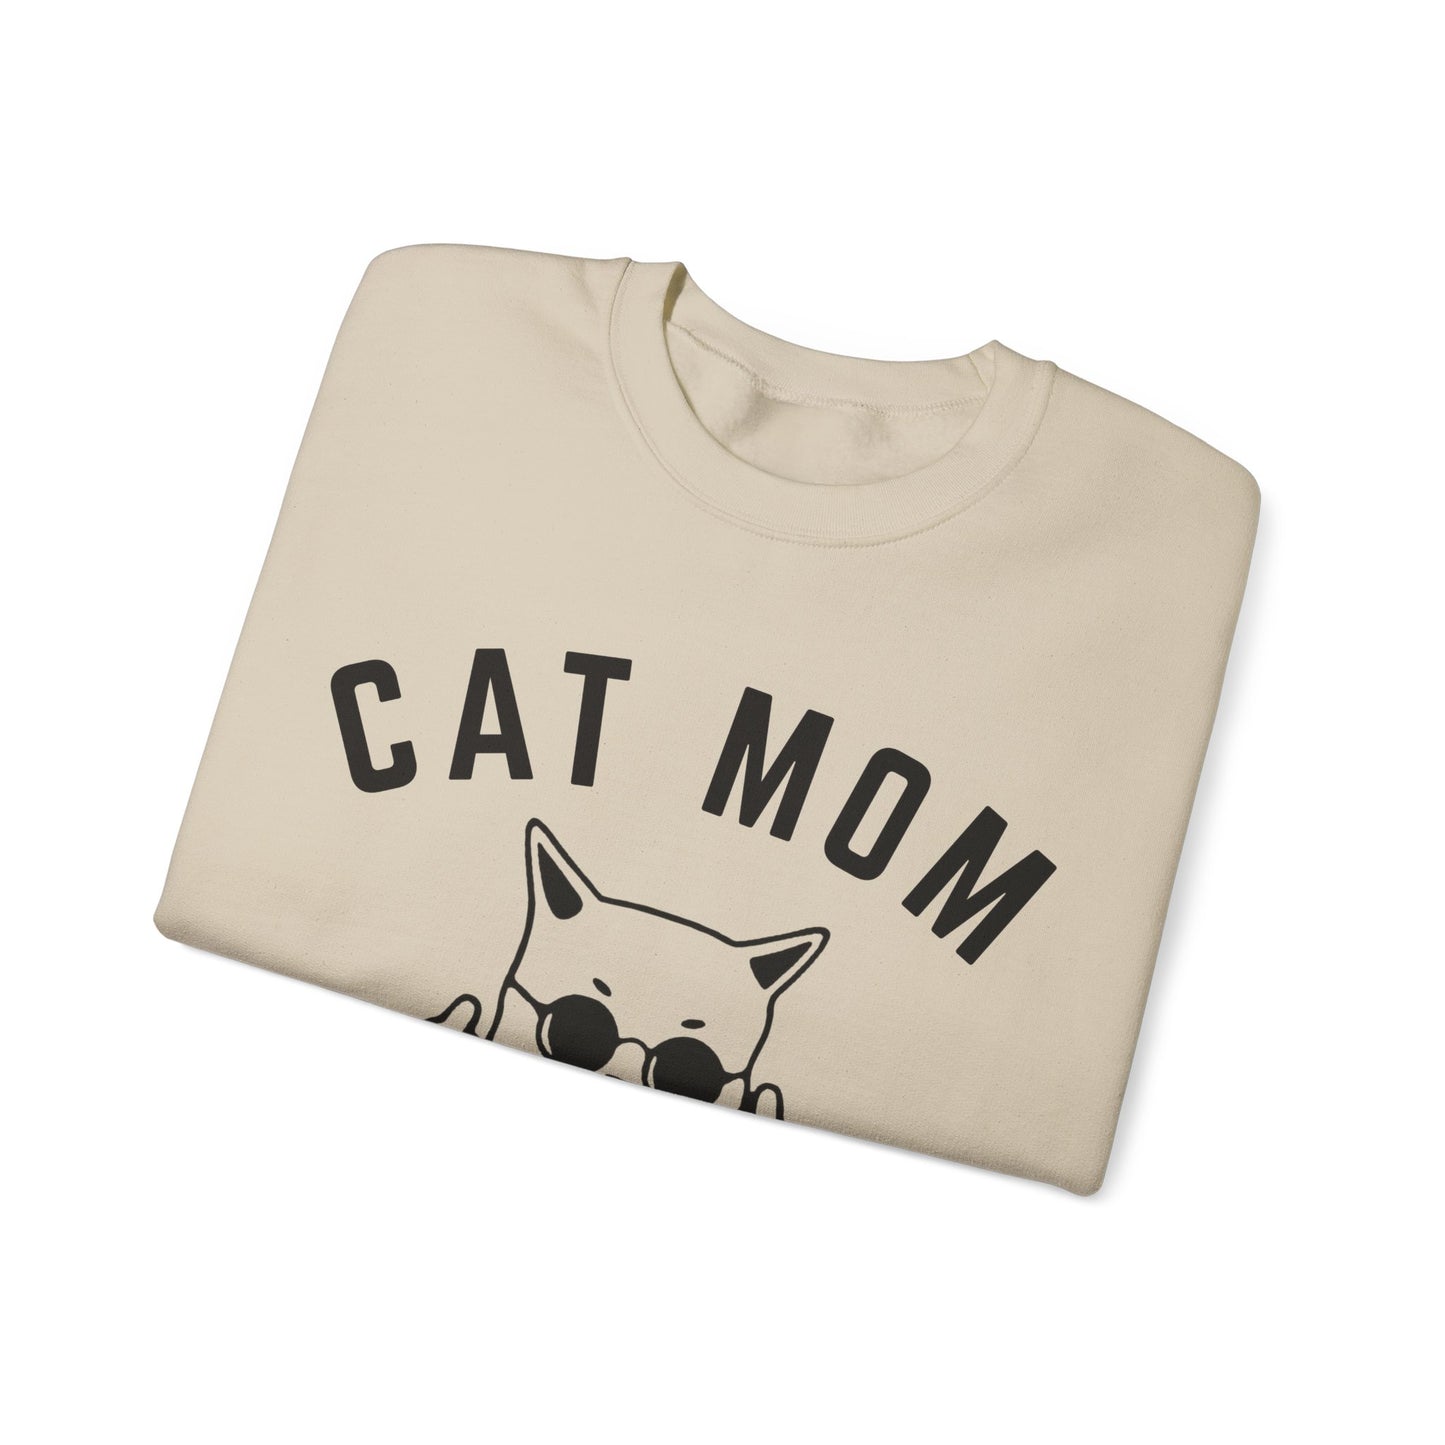 Cat Mom Sweatshirt, Funny Pet Lover Sweatshirt for Her, Cat Mama Sweatshirt for Mom Gift from Kids, Cat T-Sweatshirt Gift for Women, S1111